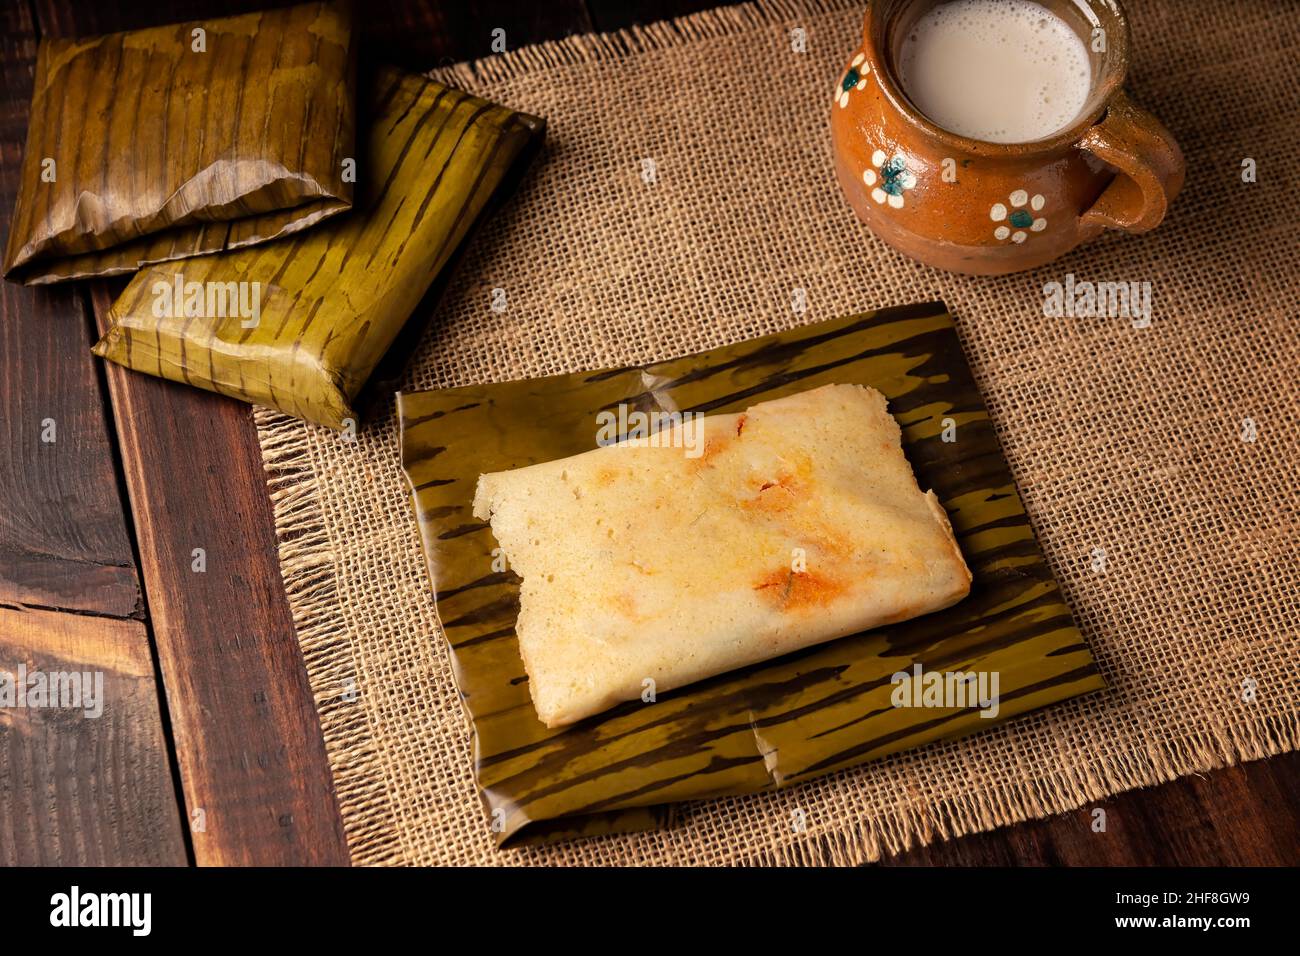 Plat préhispanique typique du Mexique et de certains pays d'Amérique latine.Pâte de maïs enveloppée de feuilles de banane.Les tamales sont cuits à la vapeur. Banque D'Images